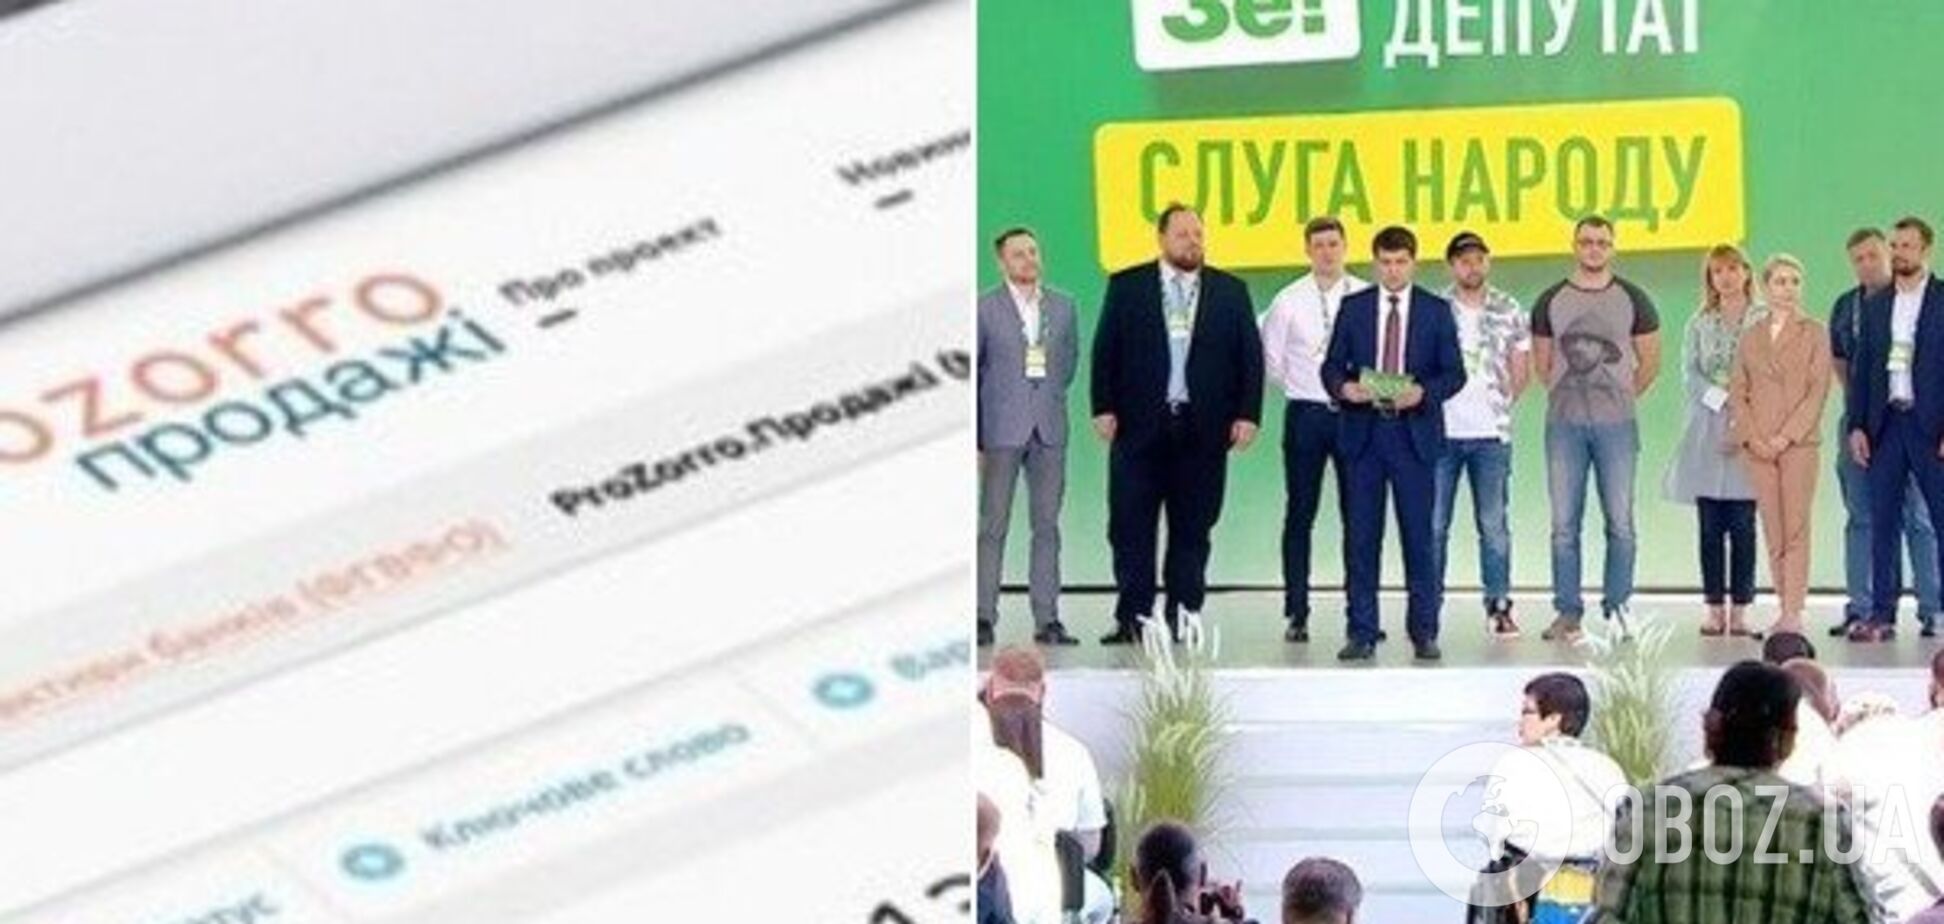 'Не скулить': у Зеленского рассказали о конце монополии ProZorro